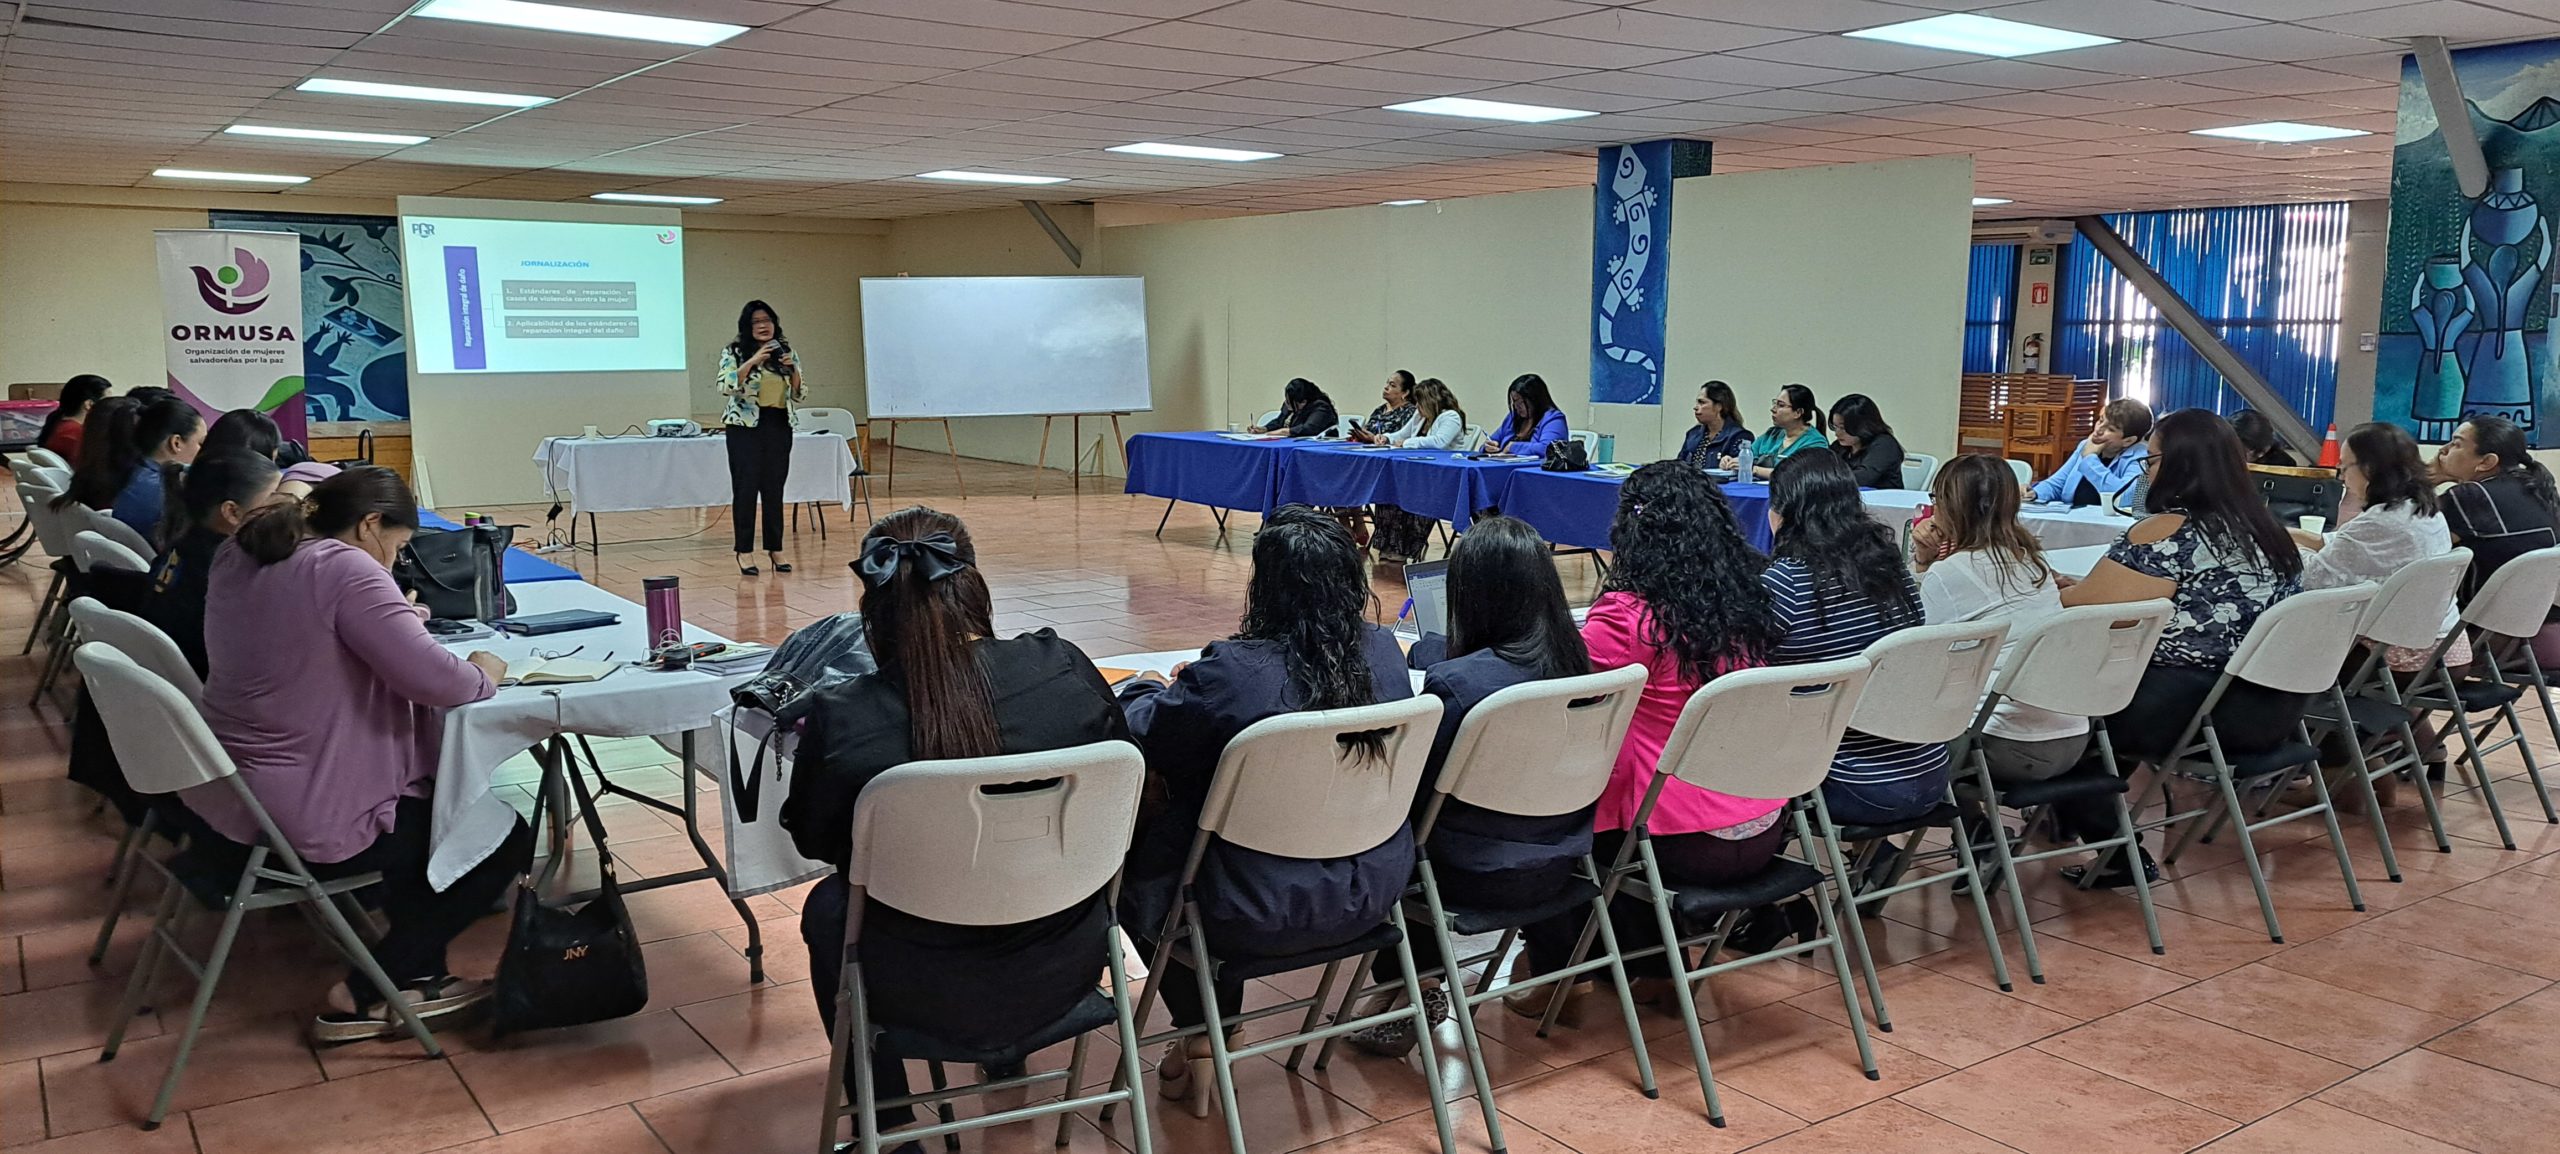 Taller de autodefensa personal feminista: iniciativa para el empoderamiento  de las mujeres salvadoreñas contra la violencia de género 